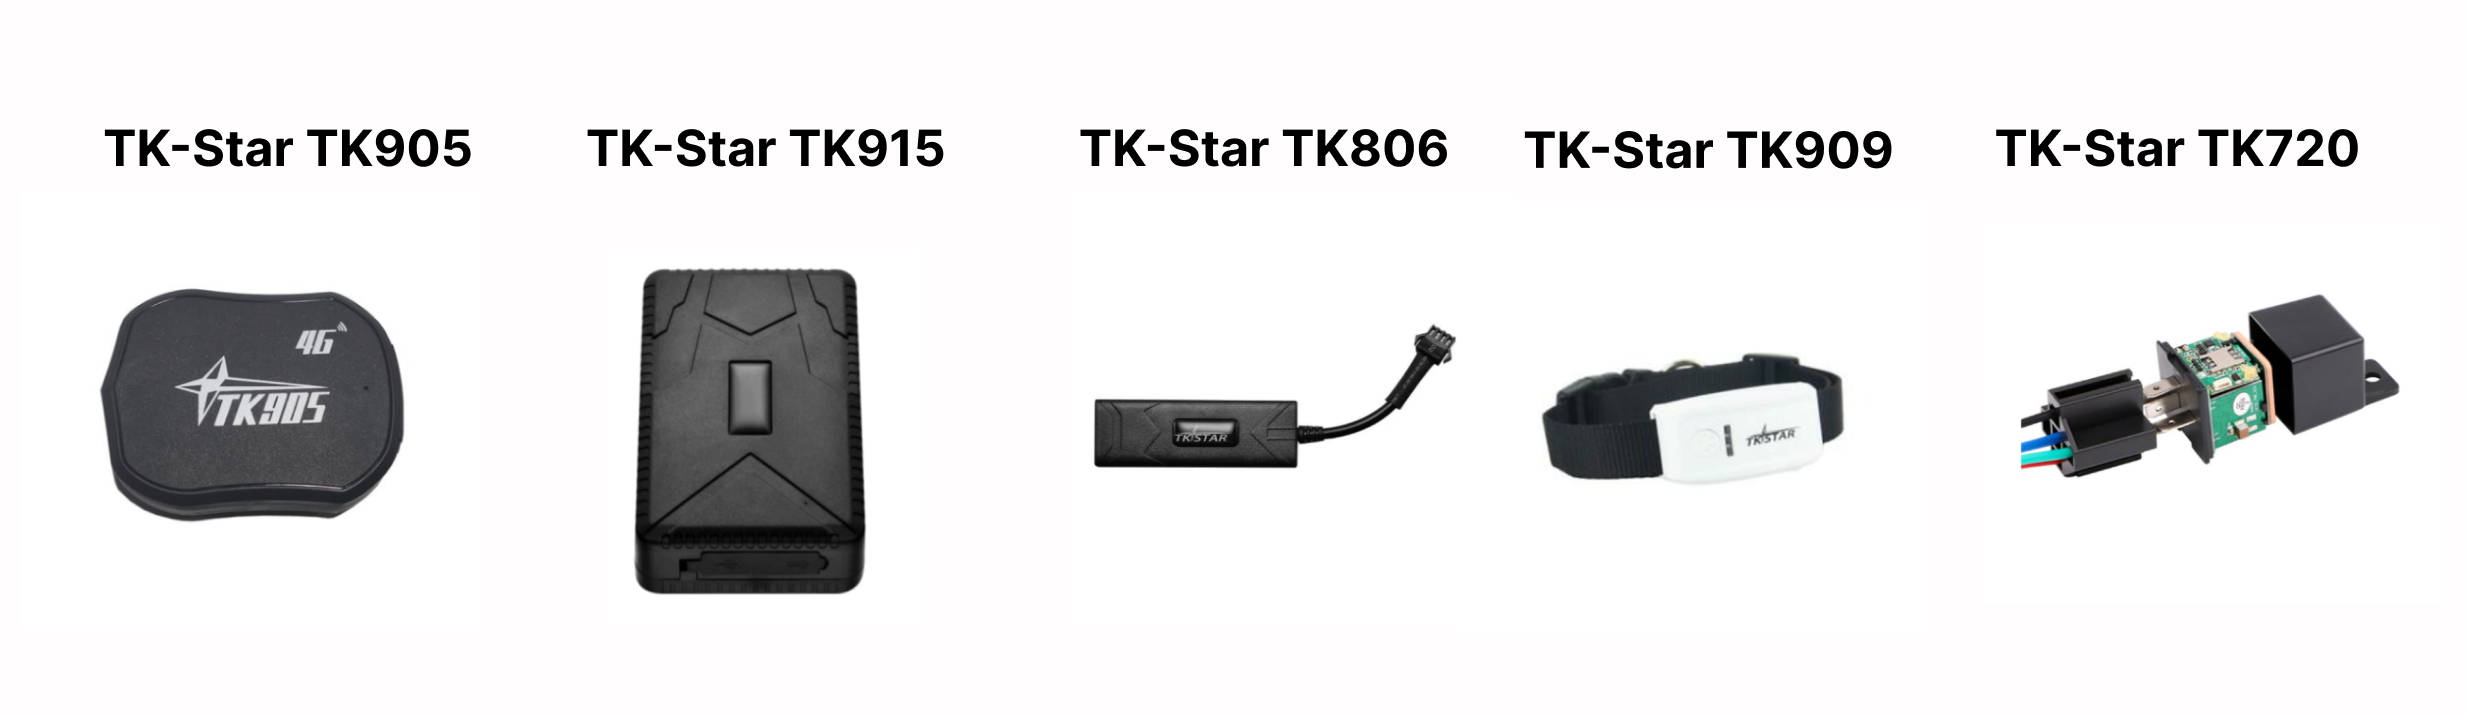 TK Star GPS трекеры